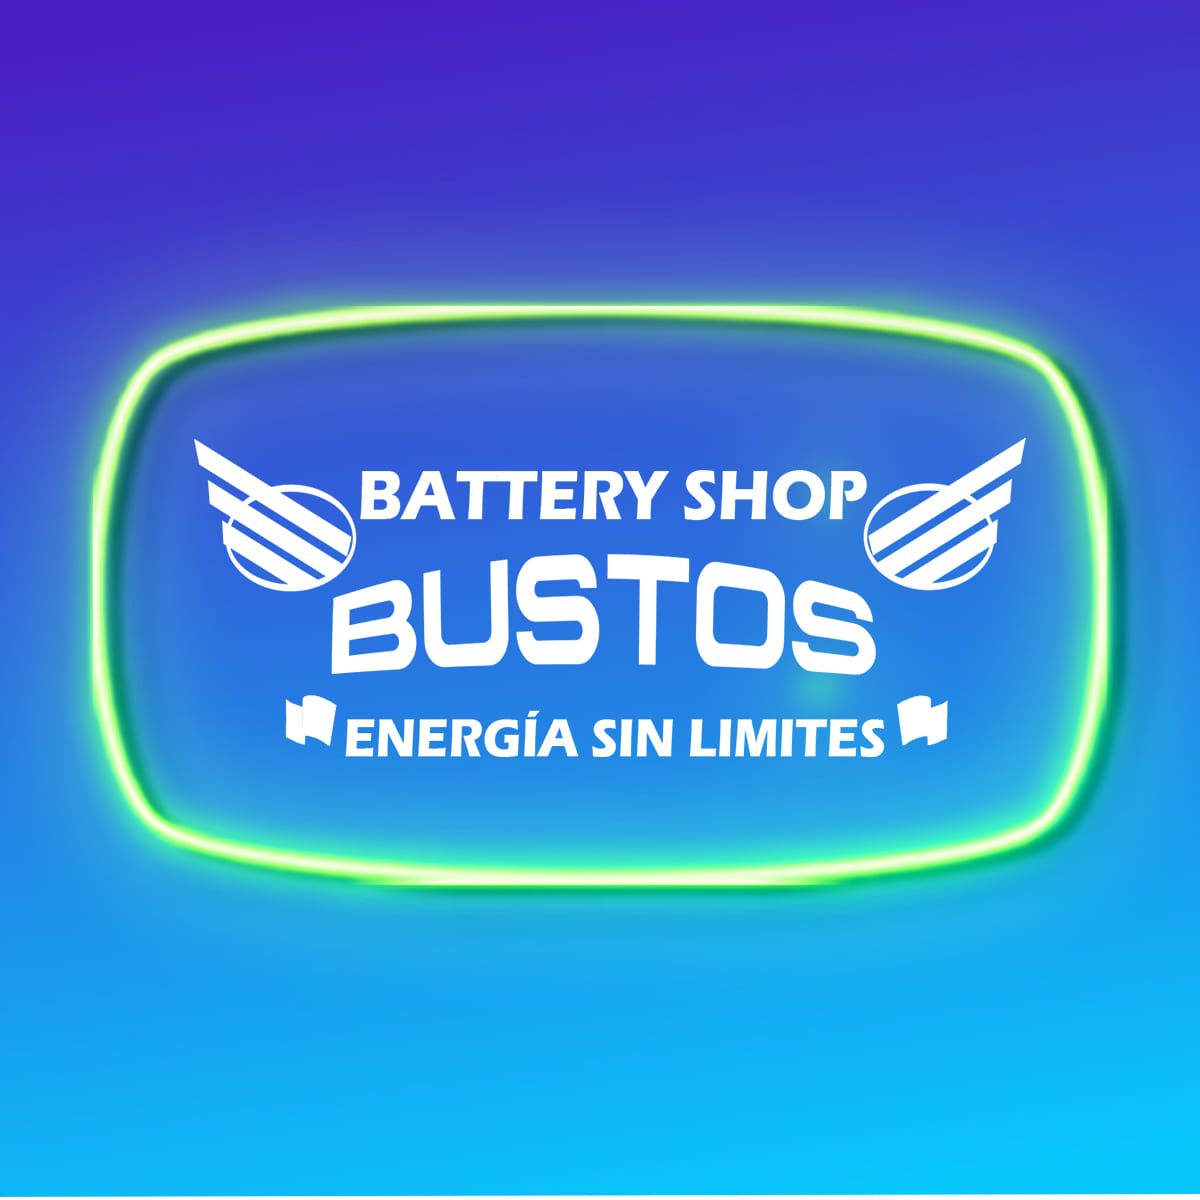 Maxima durabilidad | Energía sin limites | Acumuladores Bustos battery Shop